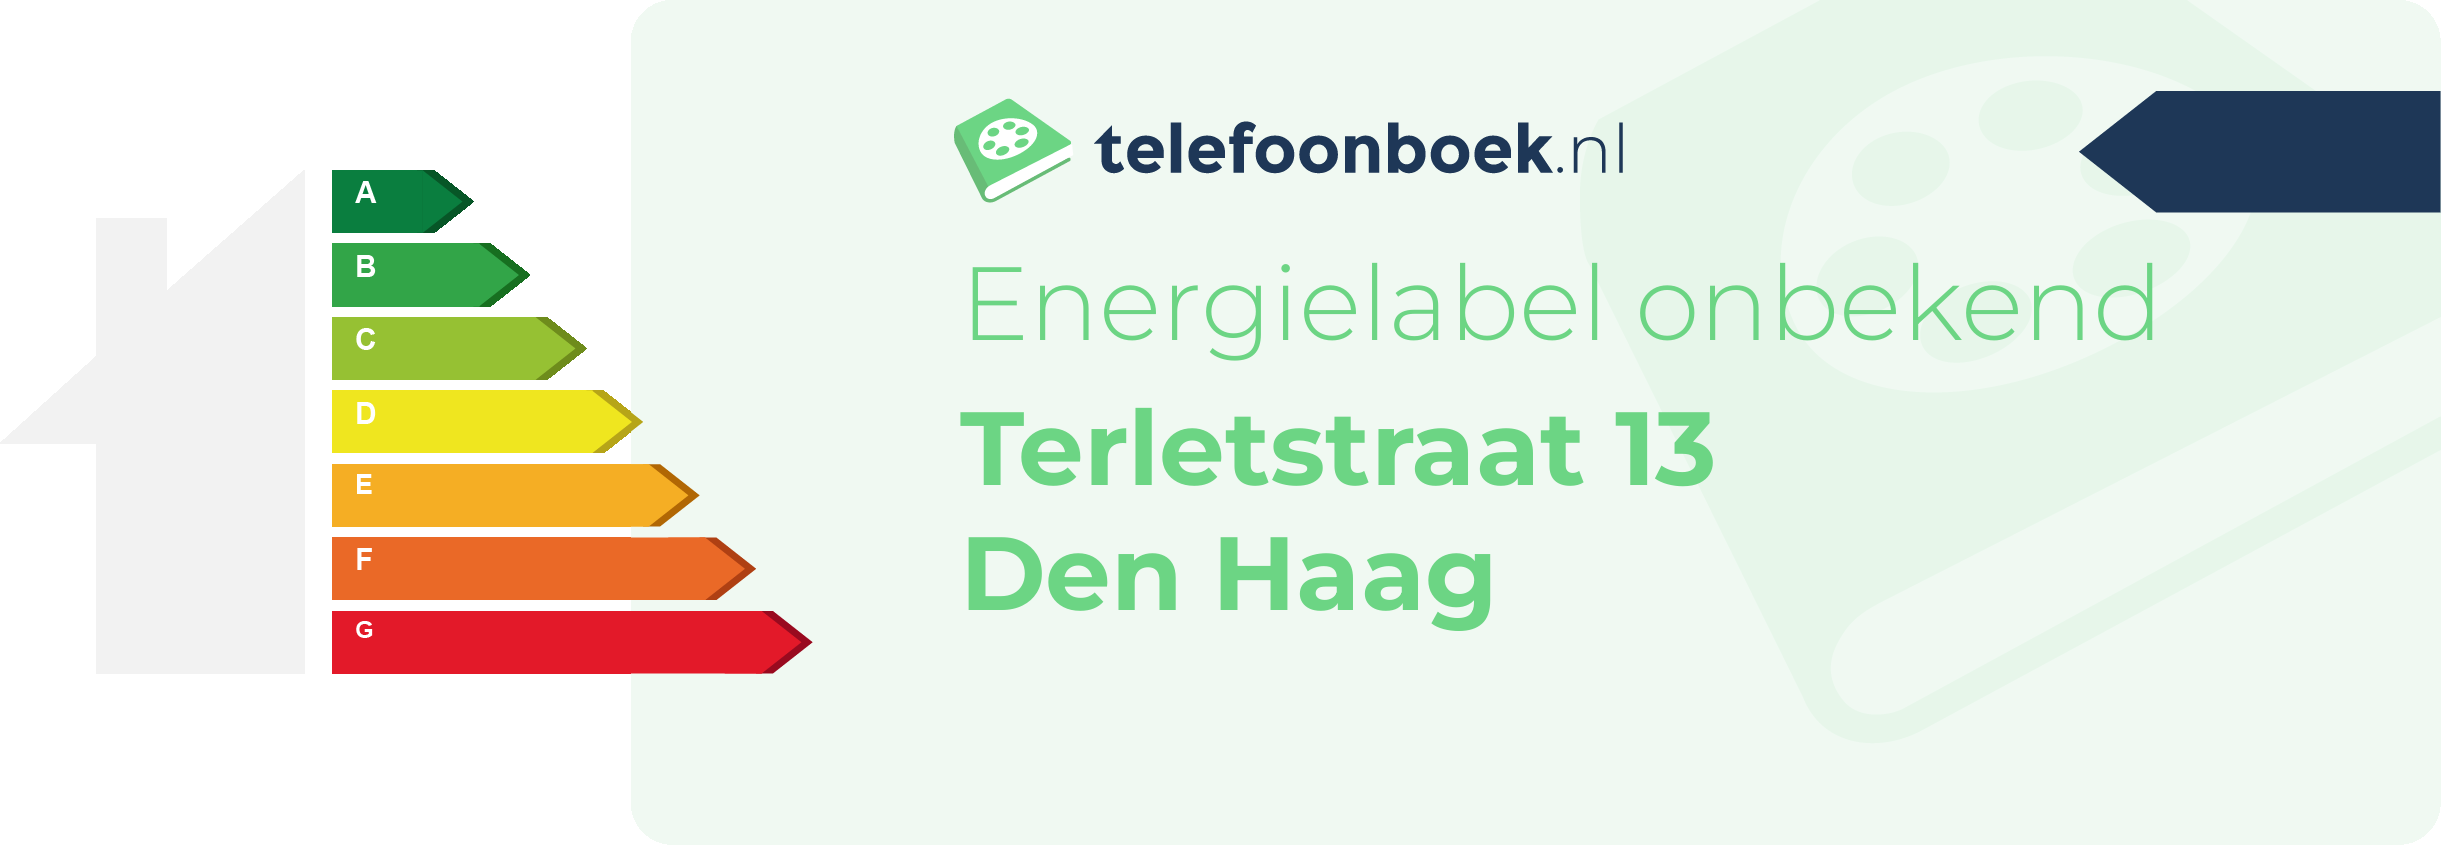 Energielabel Terletstraat 13 Den Haag